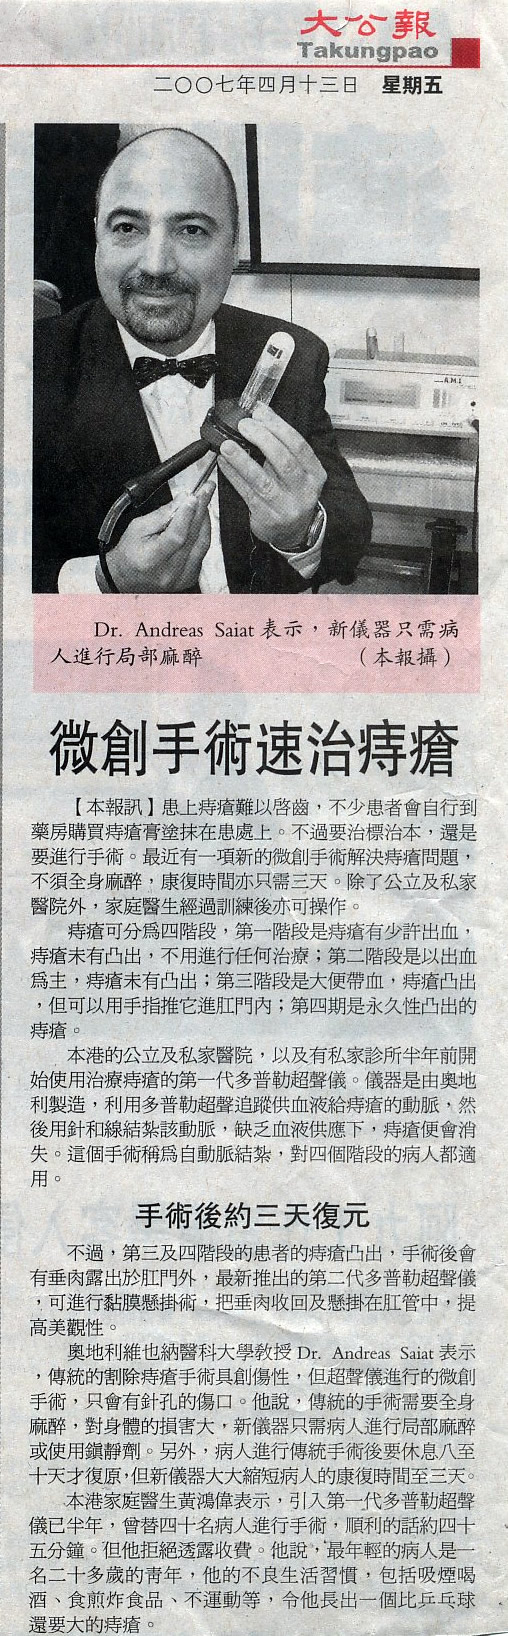 Hong Kong Haemorrhoid Centre newspaper16